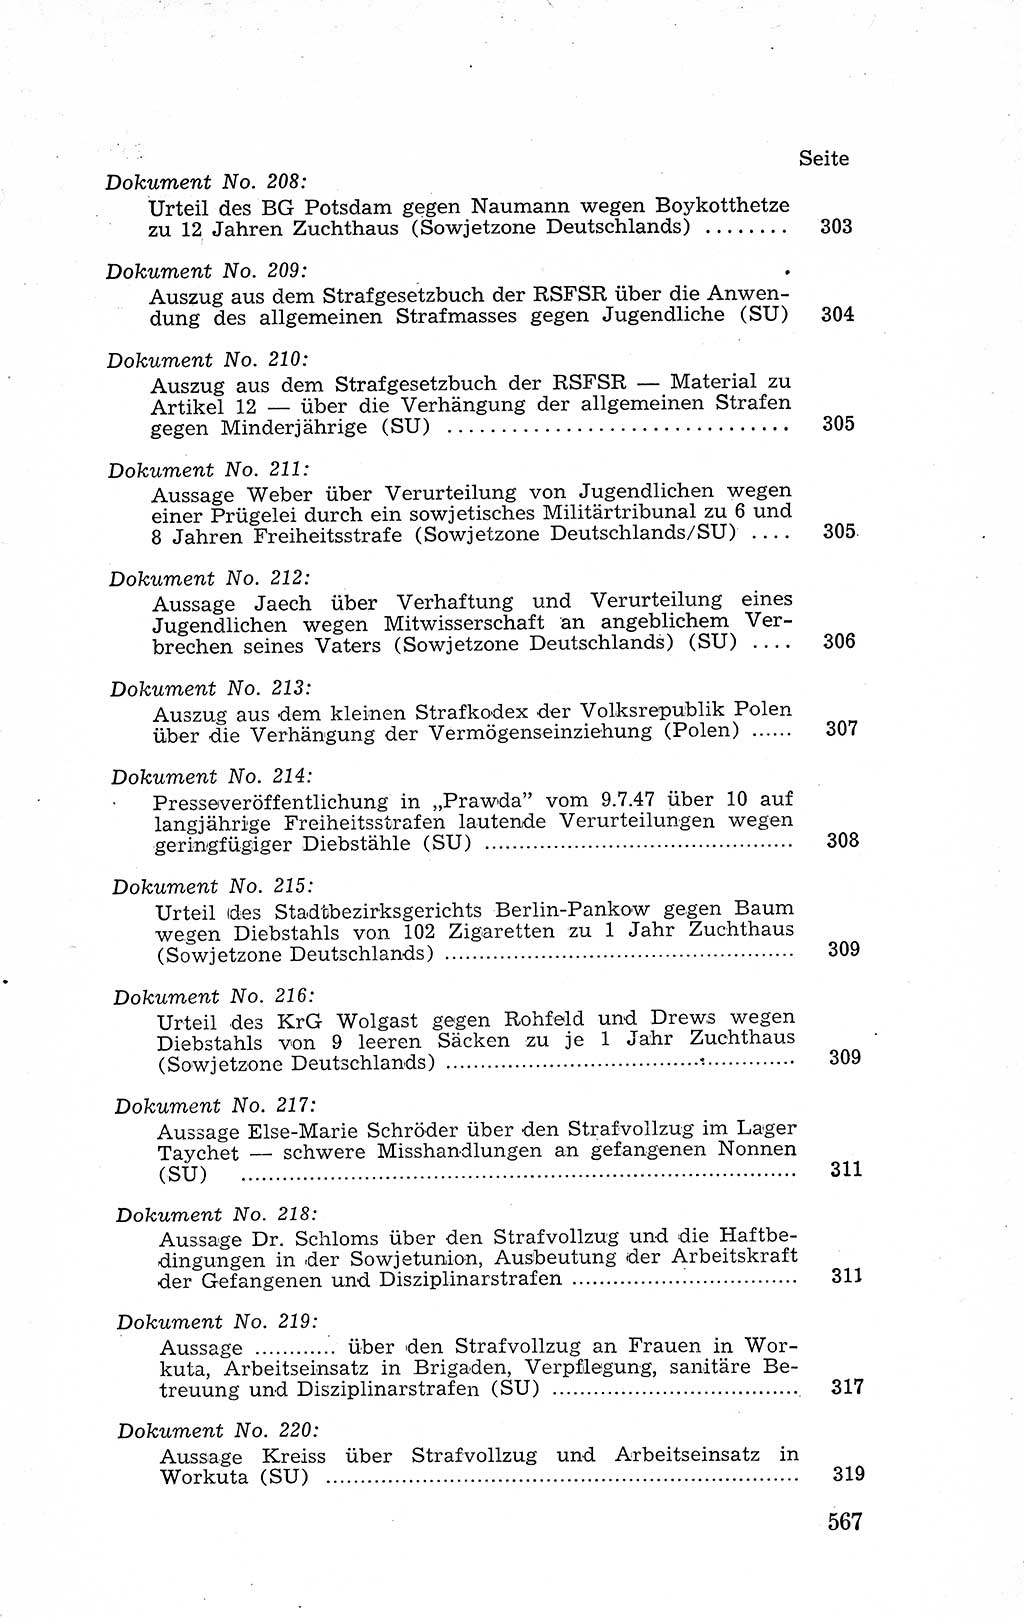 Recht in Fesseln, Dokumente, Internationale Juristen-Kommission [Bundesrepublik Deutschland (BRD)] 1955, Seite 567 (R. Dok. IJK BRD 1955, S. 567)